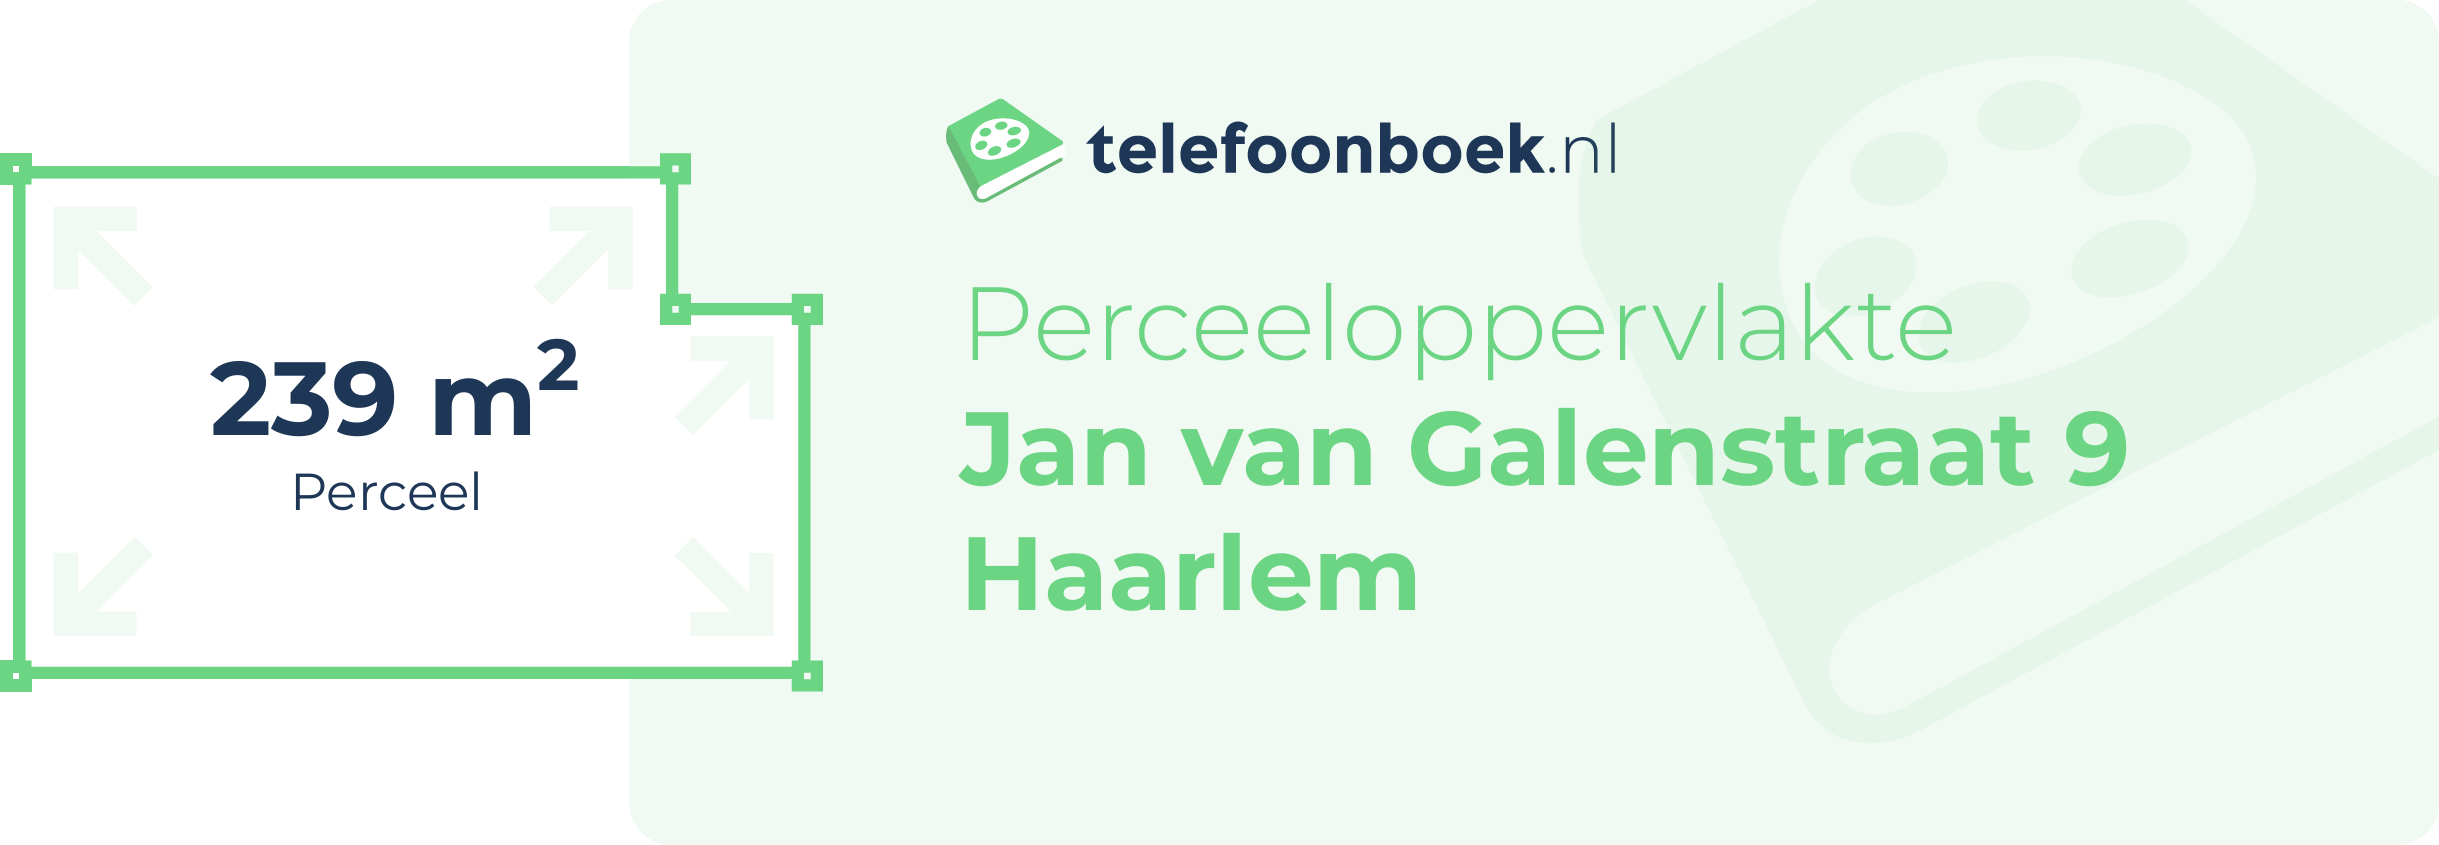 Perceeloppervlakte Jan Van Galenstraat 9 Haarlem